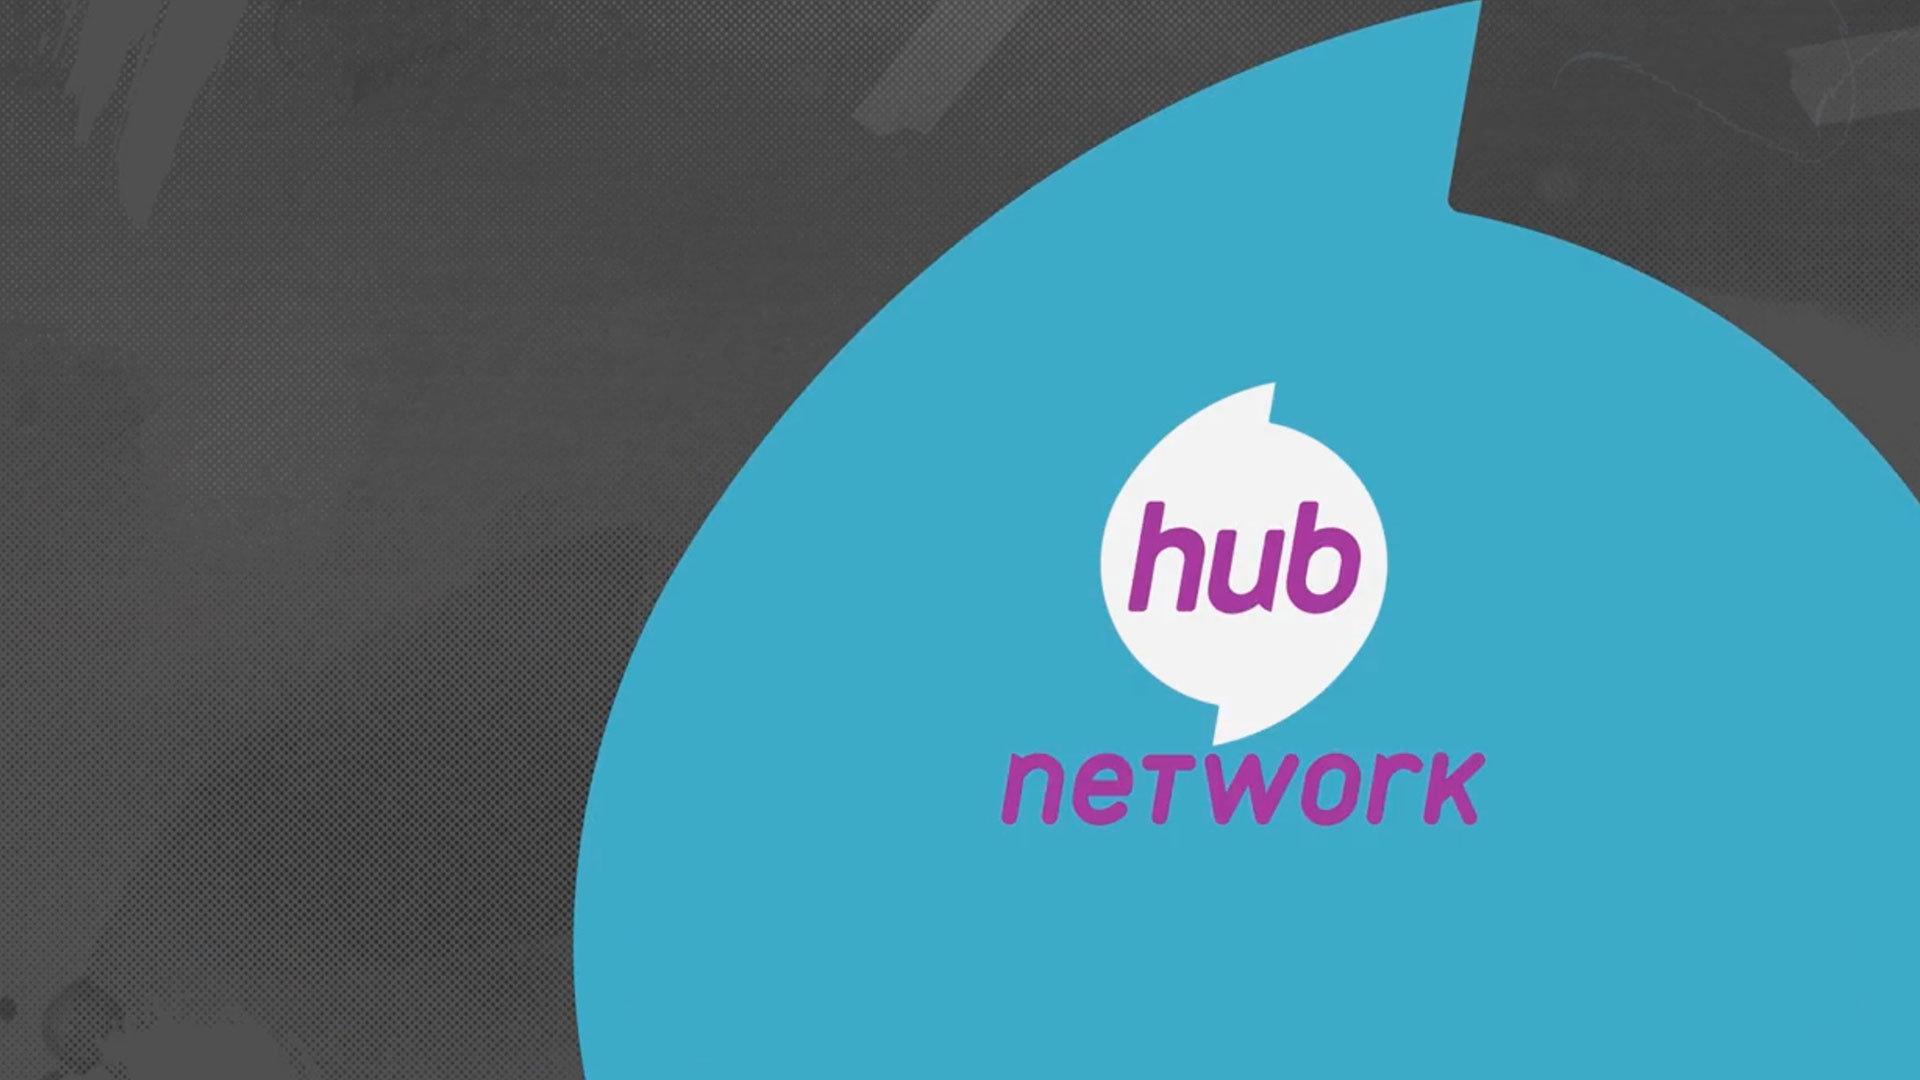 Hub Network Logo - Hub Network Typeface | PS Design | Branding & Design Studio